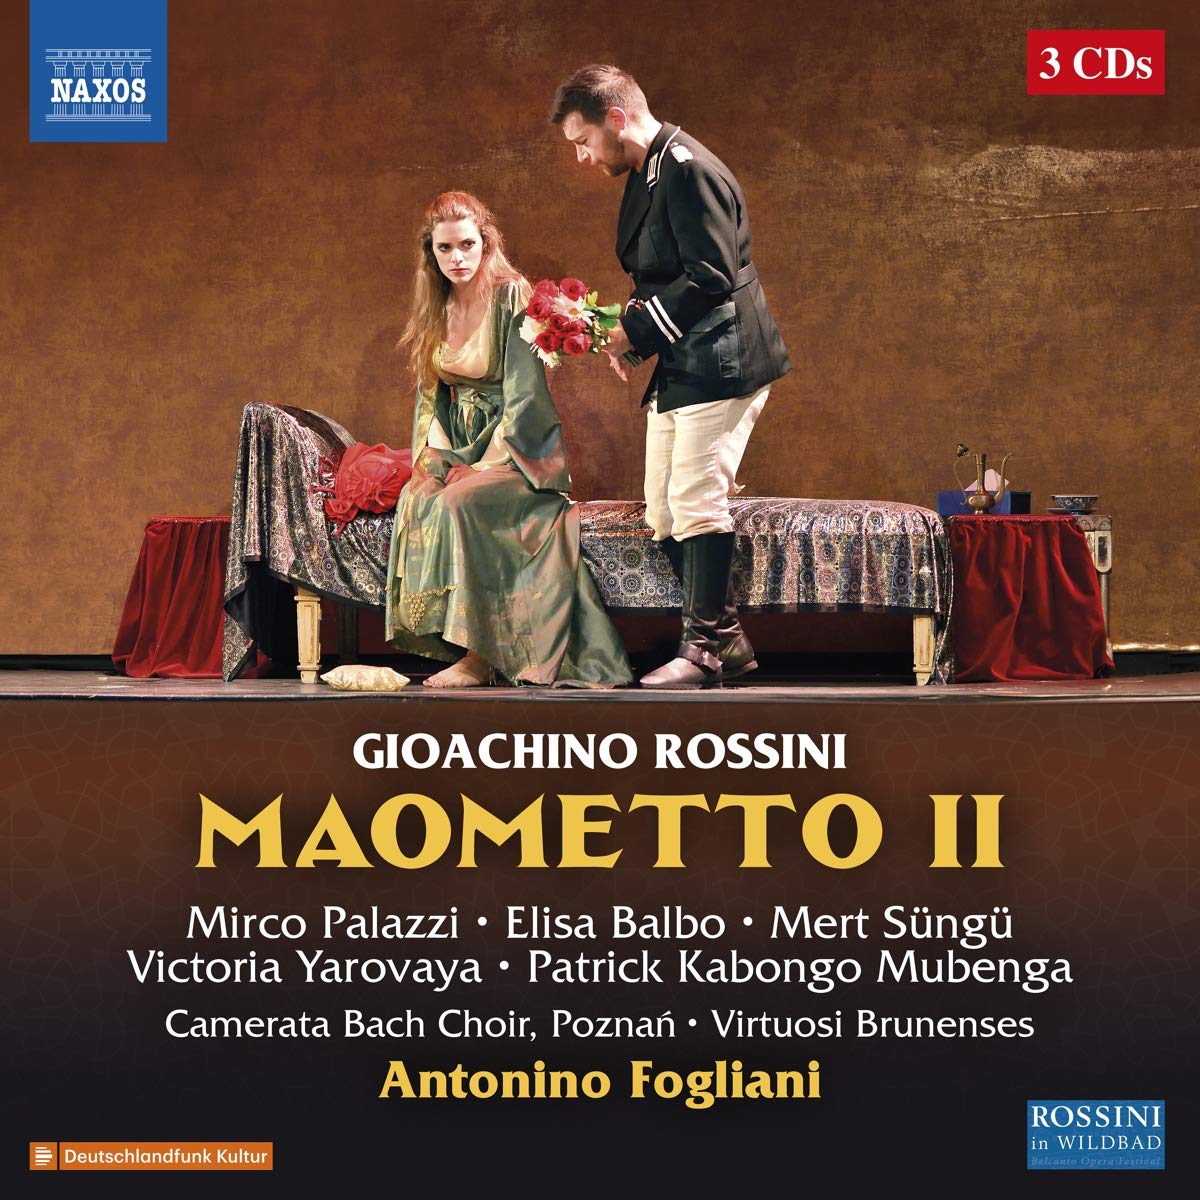 Audio Cd Gioacchino Rossini - Maometto II (4 Cd) NUOVO SIGILLATO, EDIZIONE DEL 11/09/2018 SUBITO DISPONIBILE